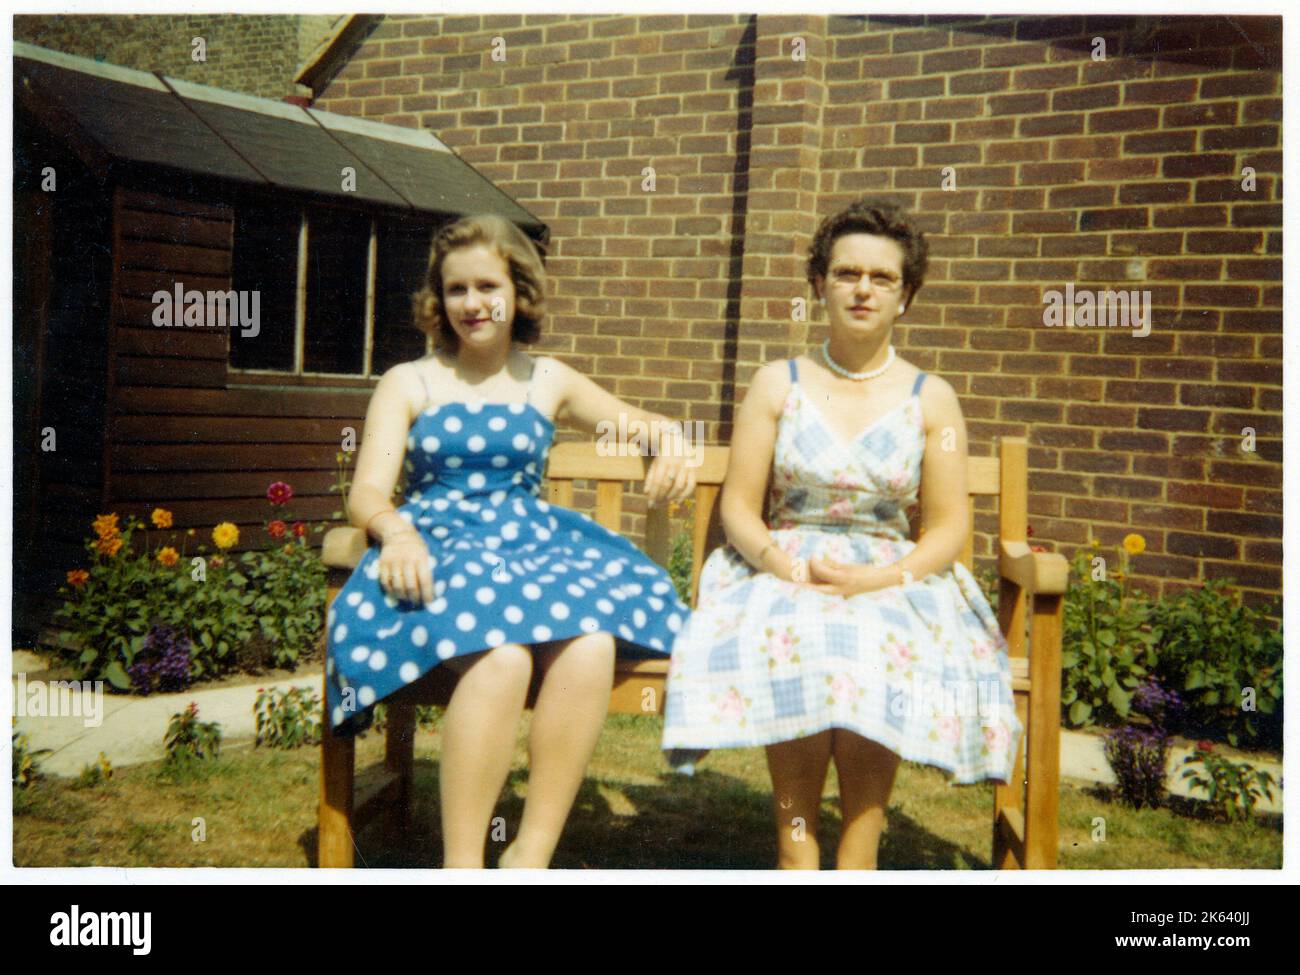 Una madre e un duaghter nei loro migliori camici estivi che si affacciano su una panchina in un giardino suburbano molto pulito e curato retro - Agosto, 1959. Foto Stock